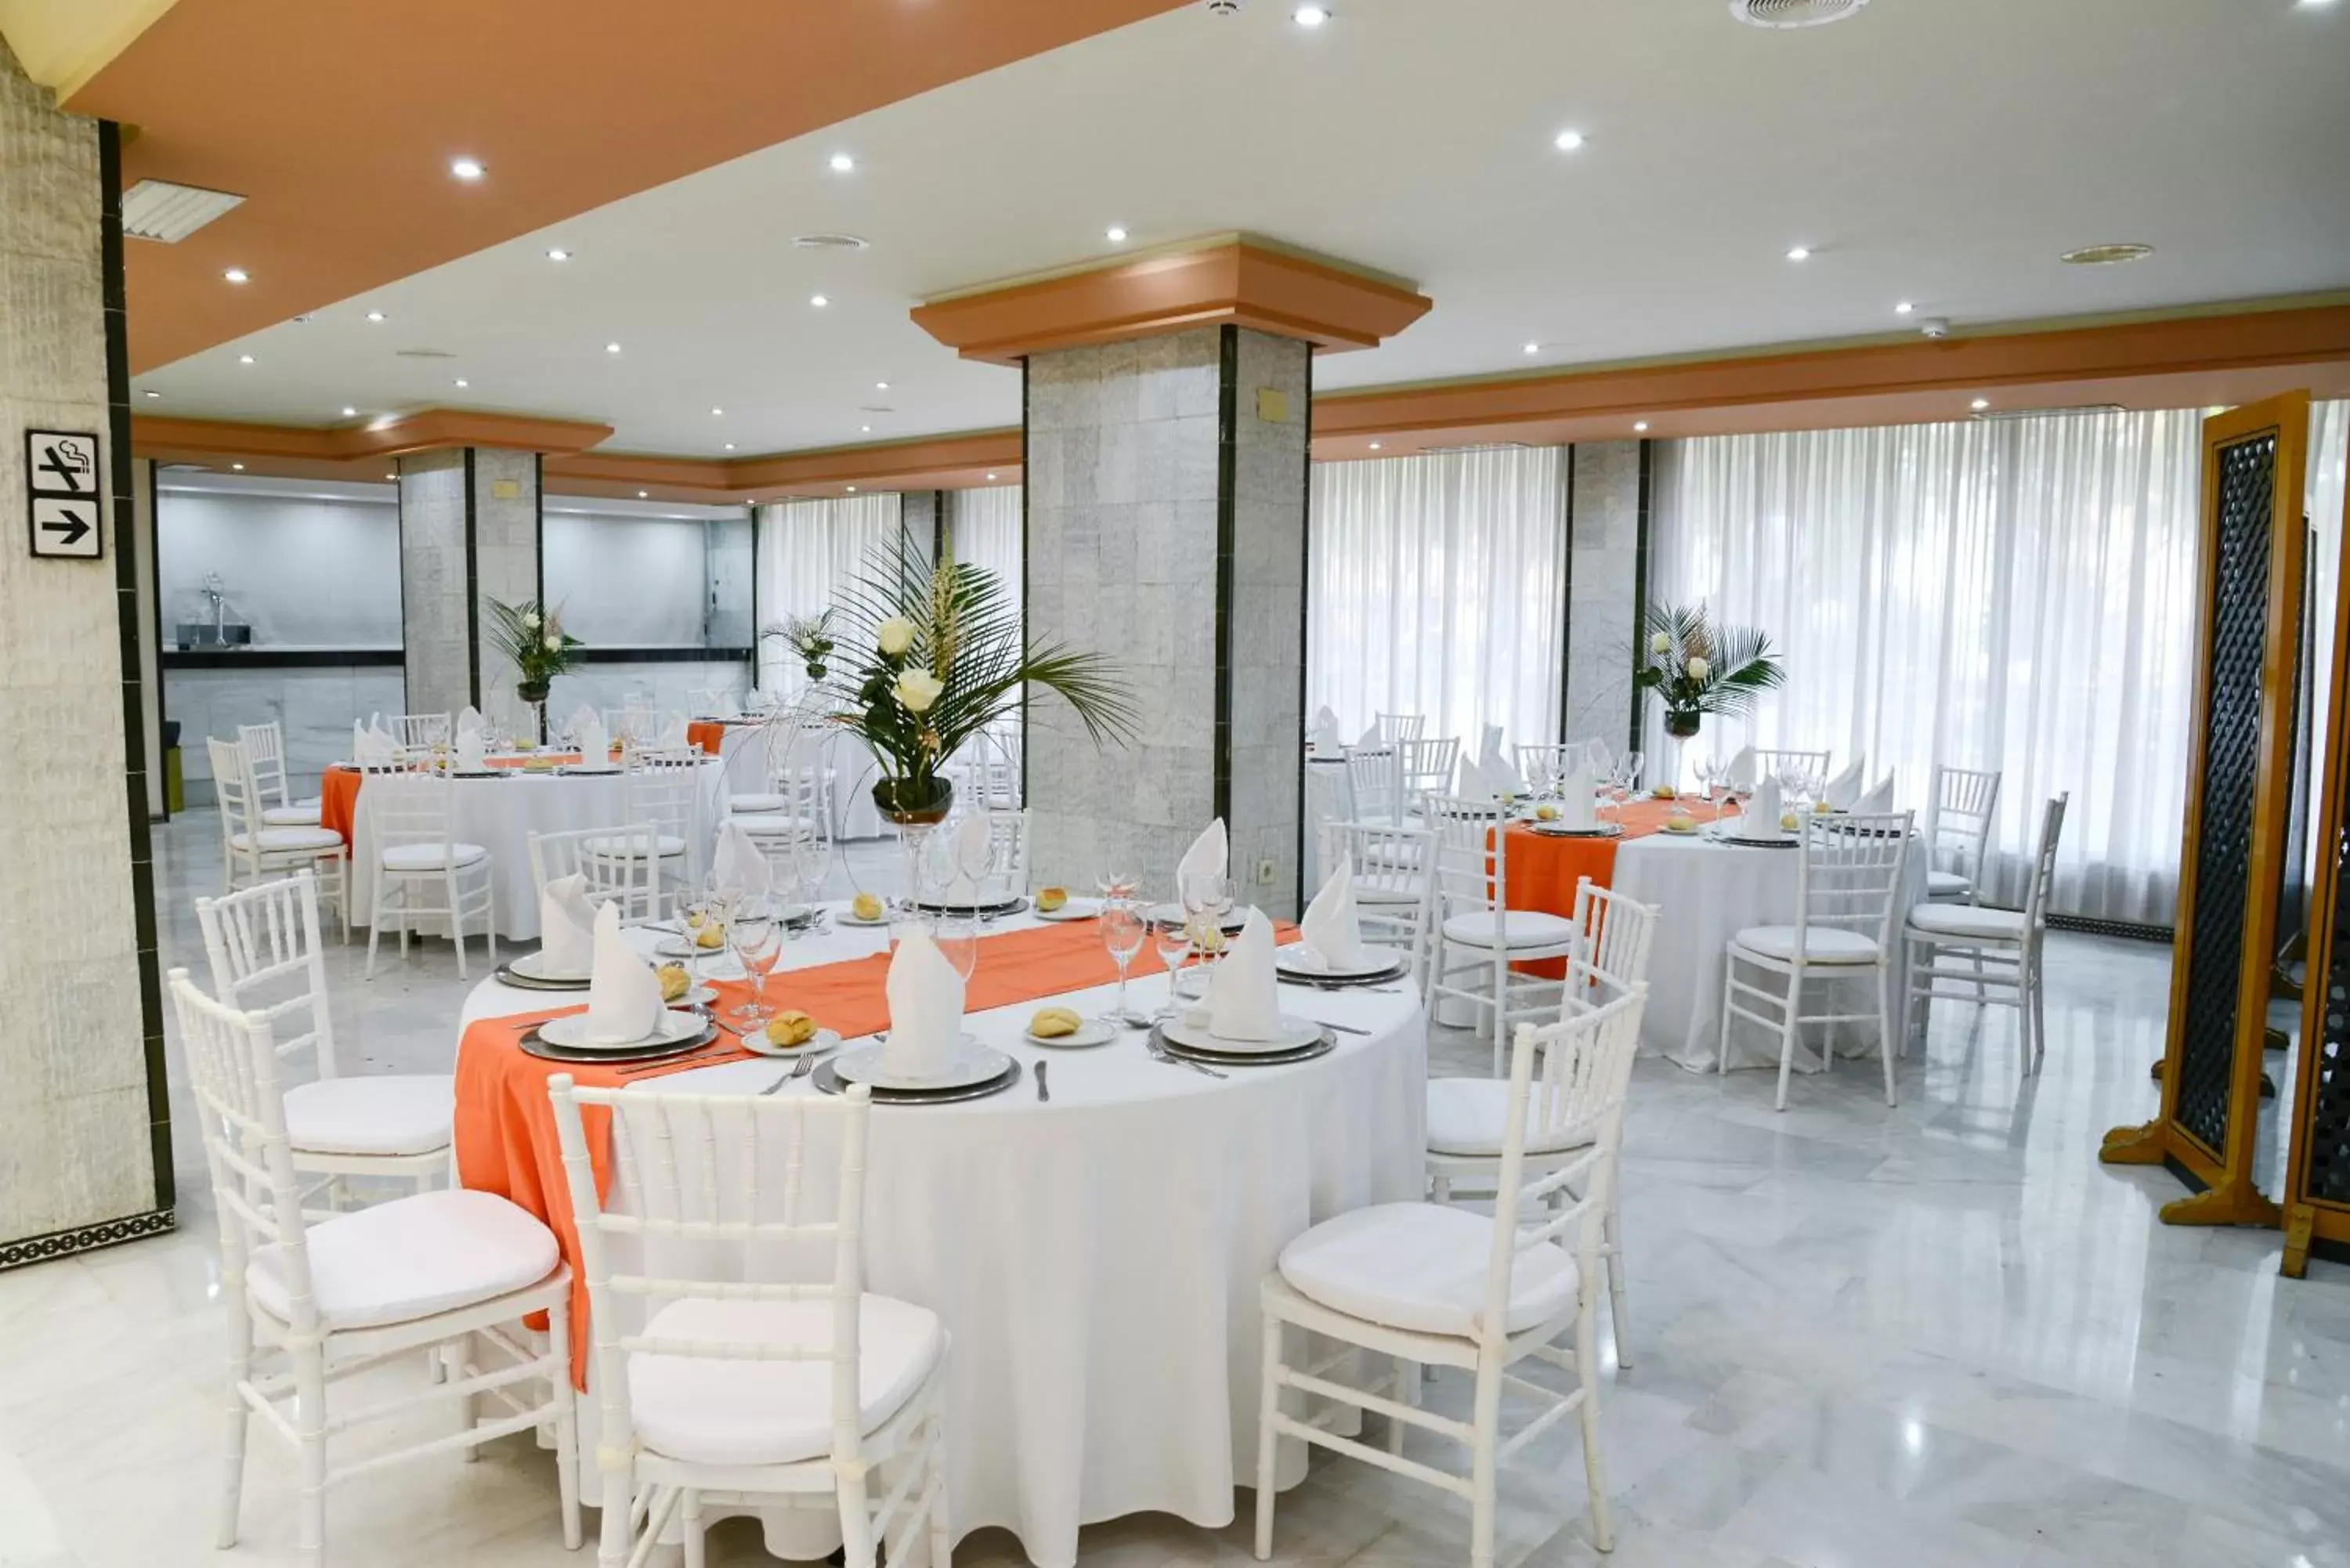 Banquet/Function facilities, Banquet Facilities in Hotel San Pablo Sevilla